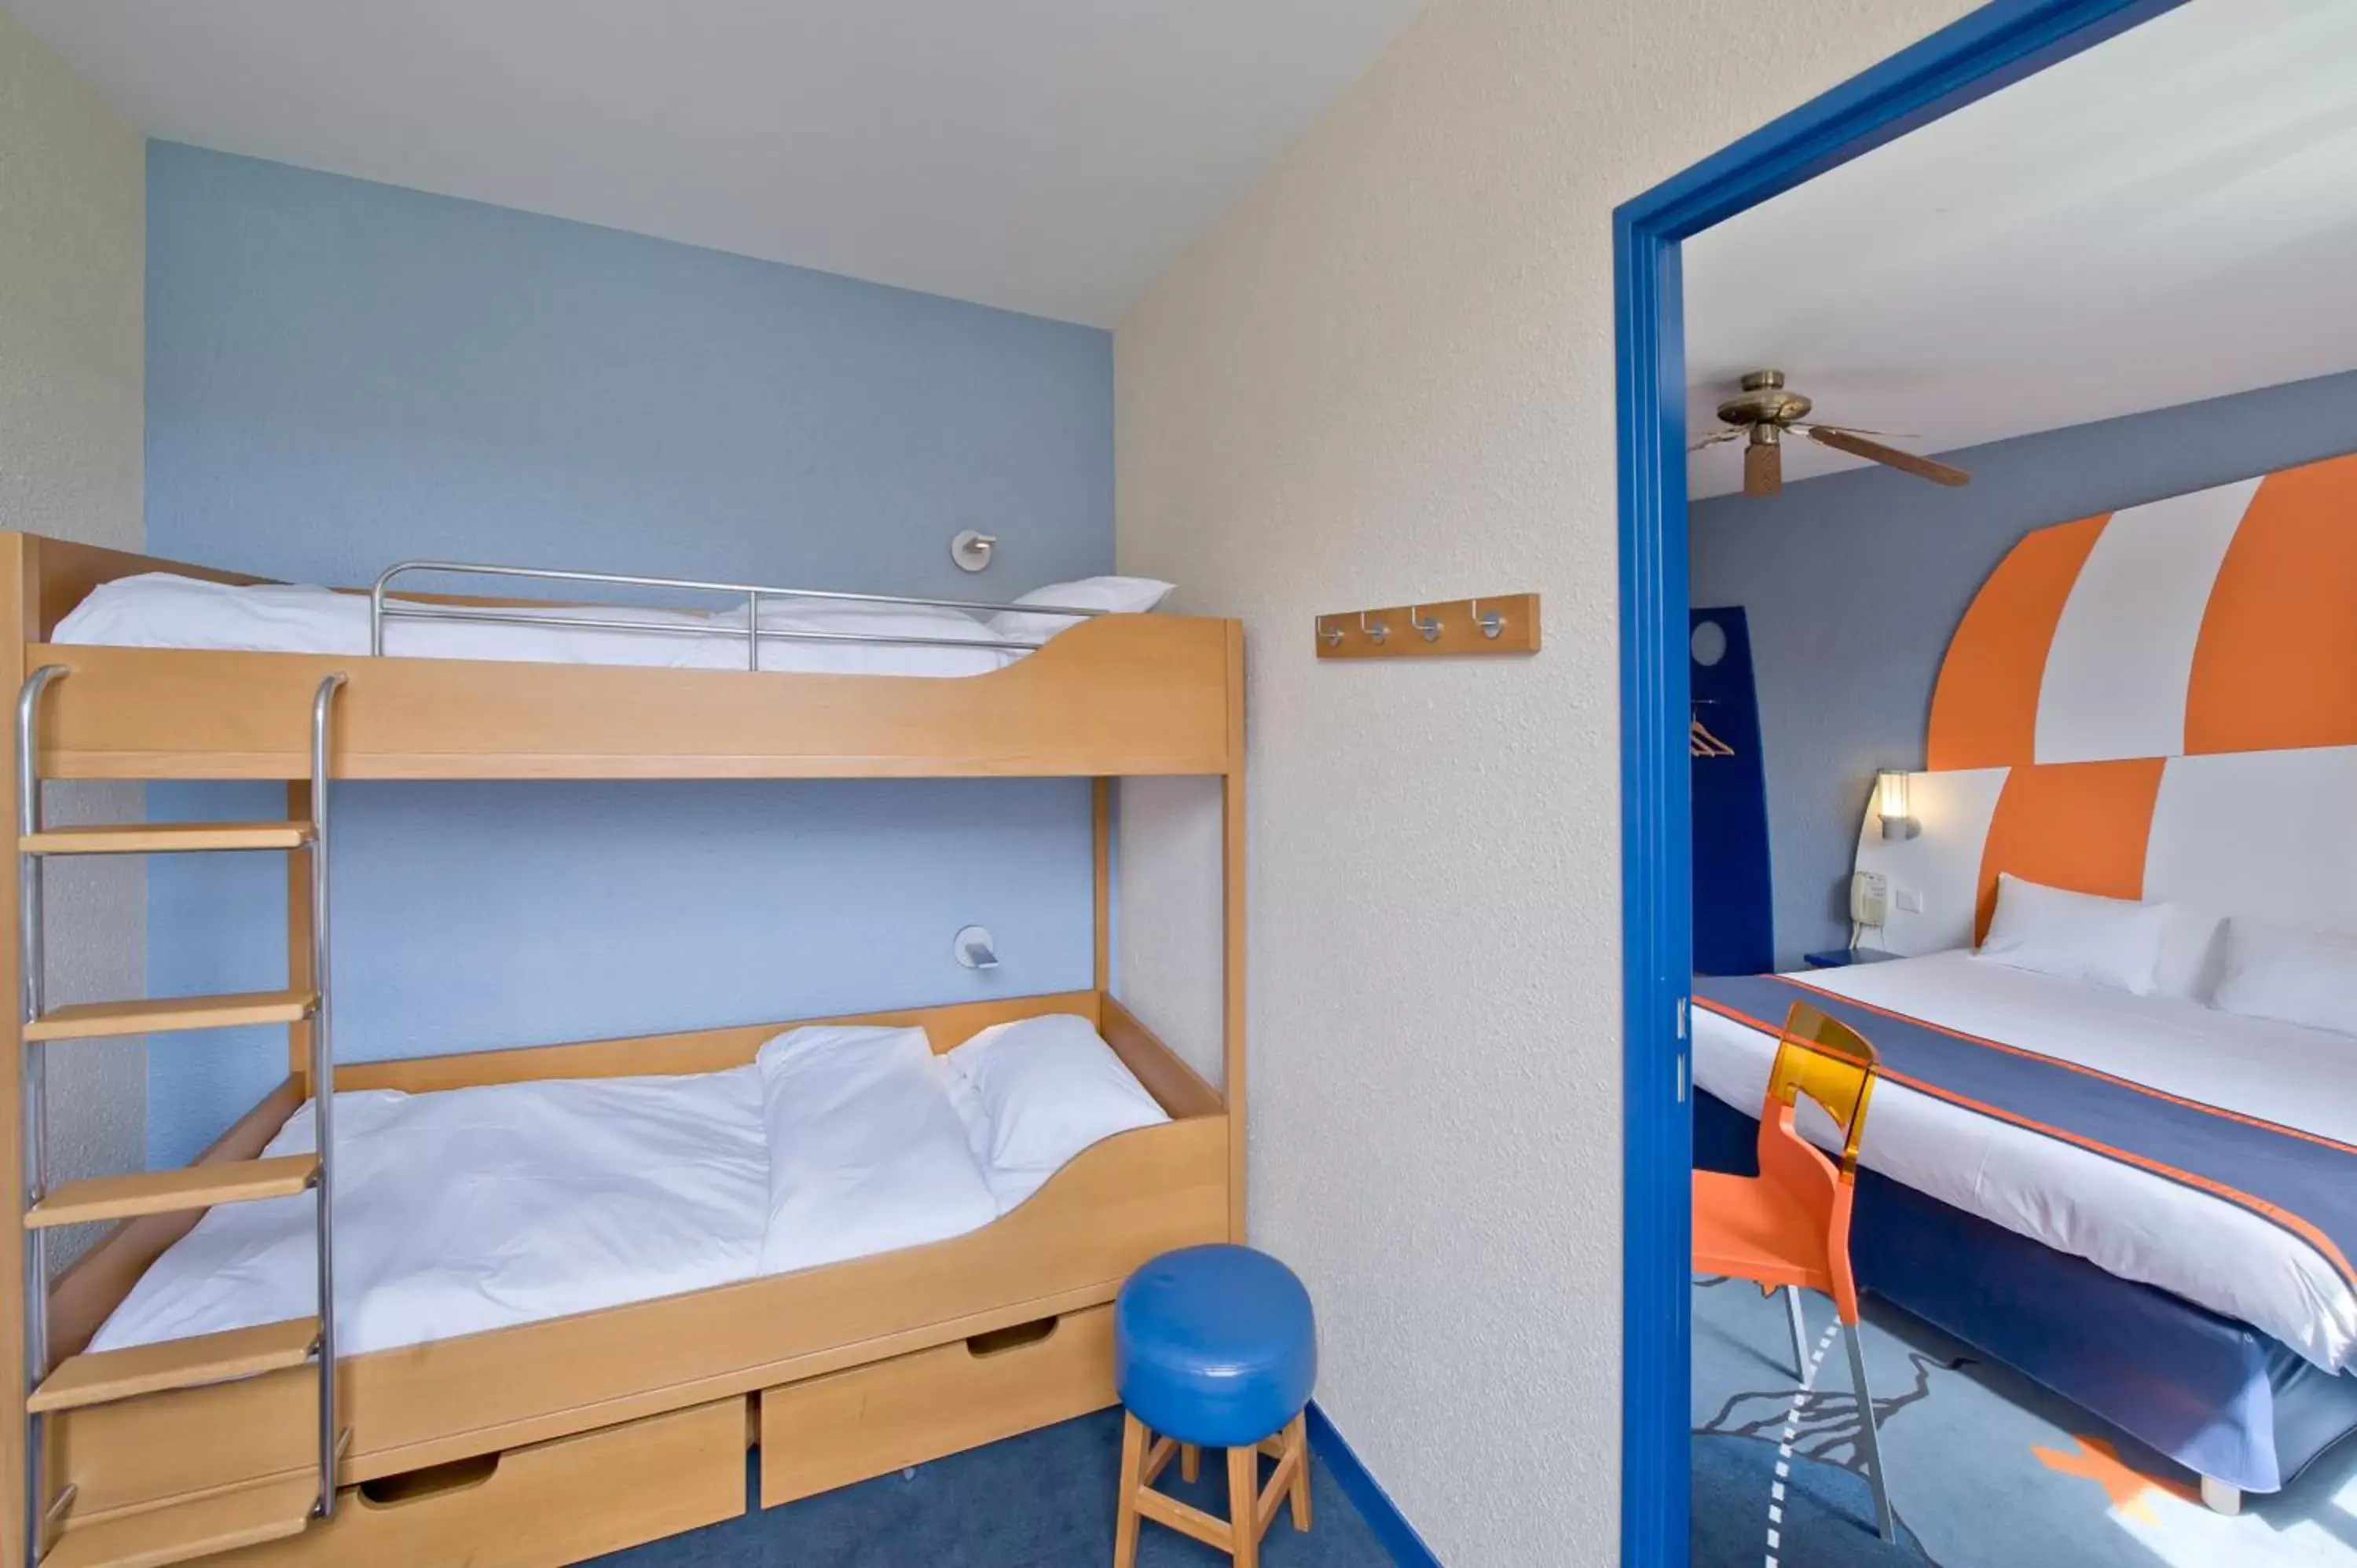 Bedroom, Bunk Bed in Explorers Hotel Marne-la-Vallée